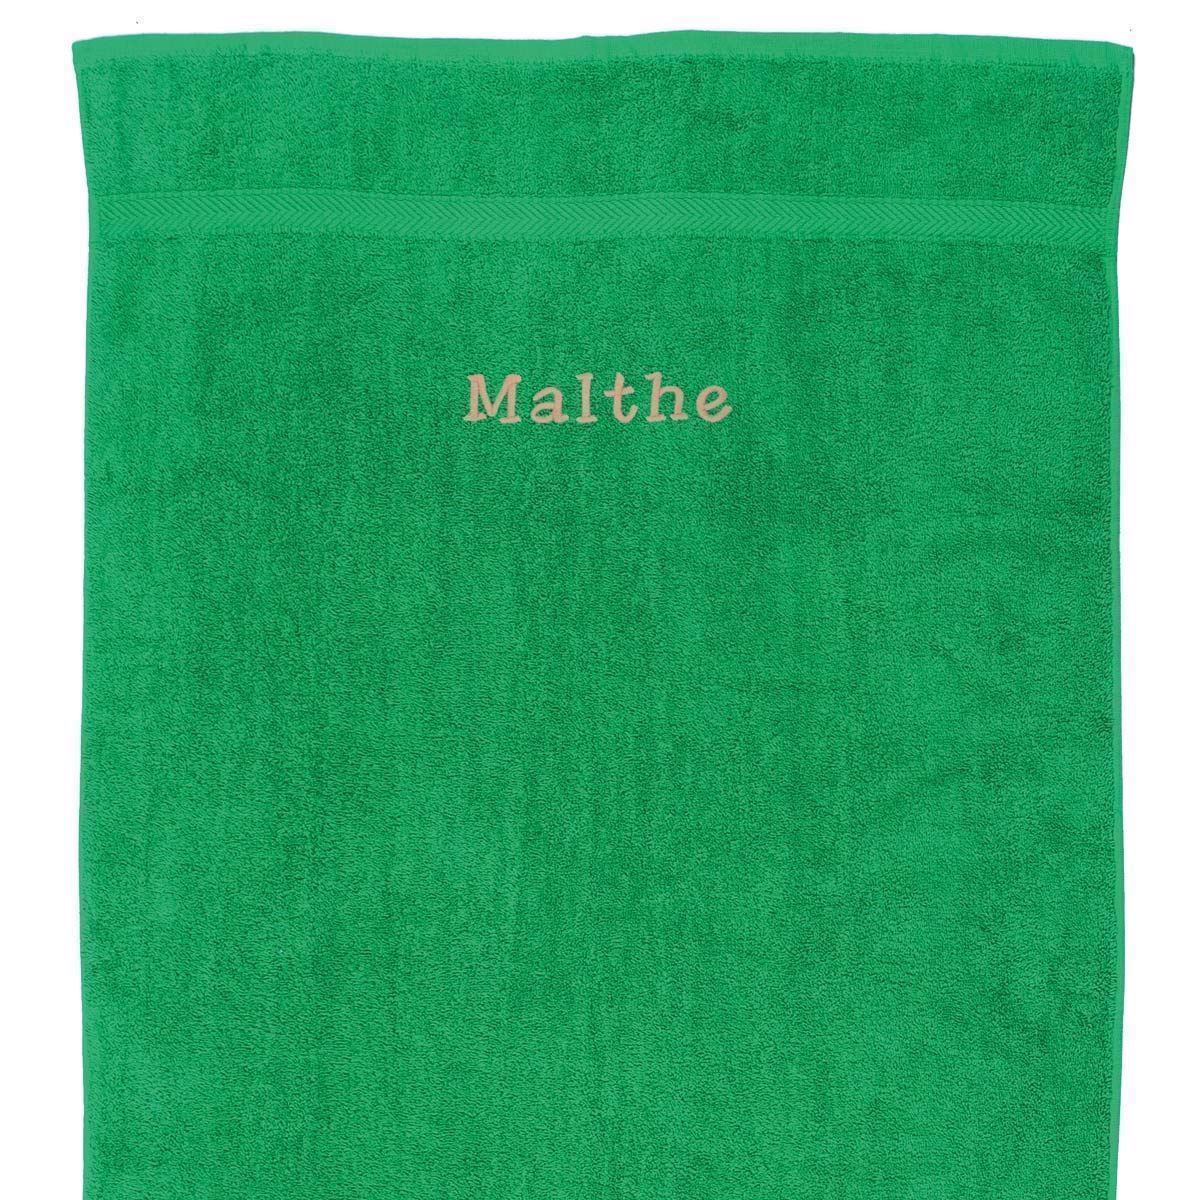 Græsgrønt Håndklæde Med Navn - 50 X 90 Cm